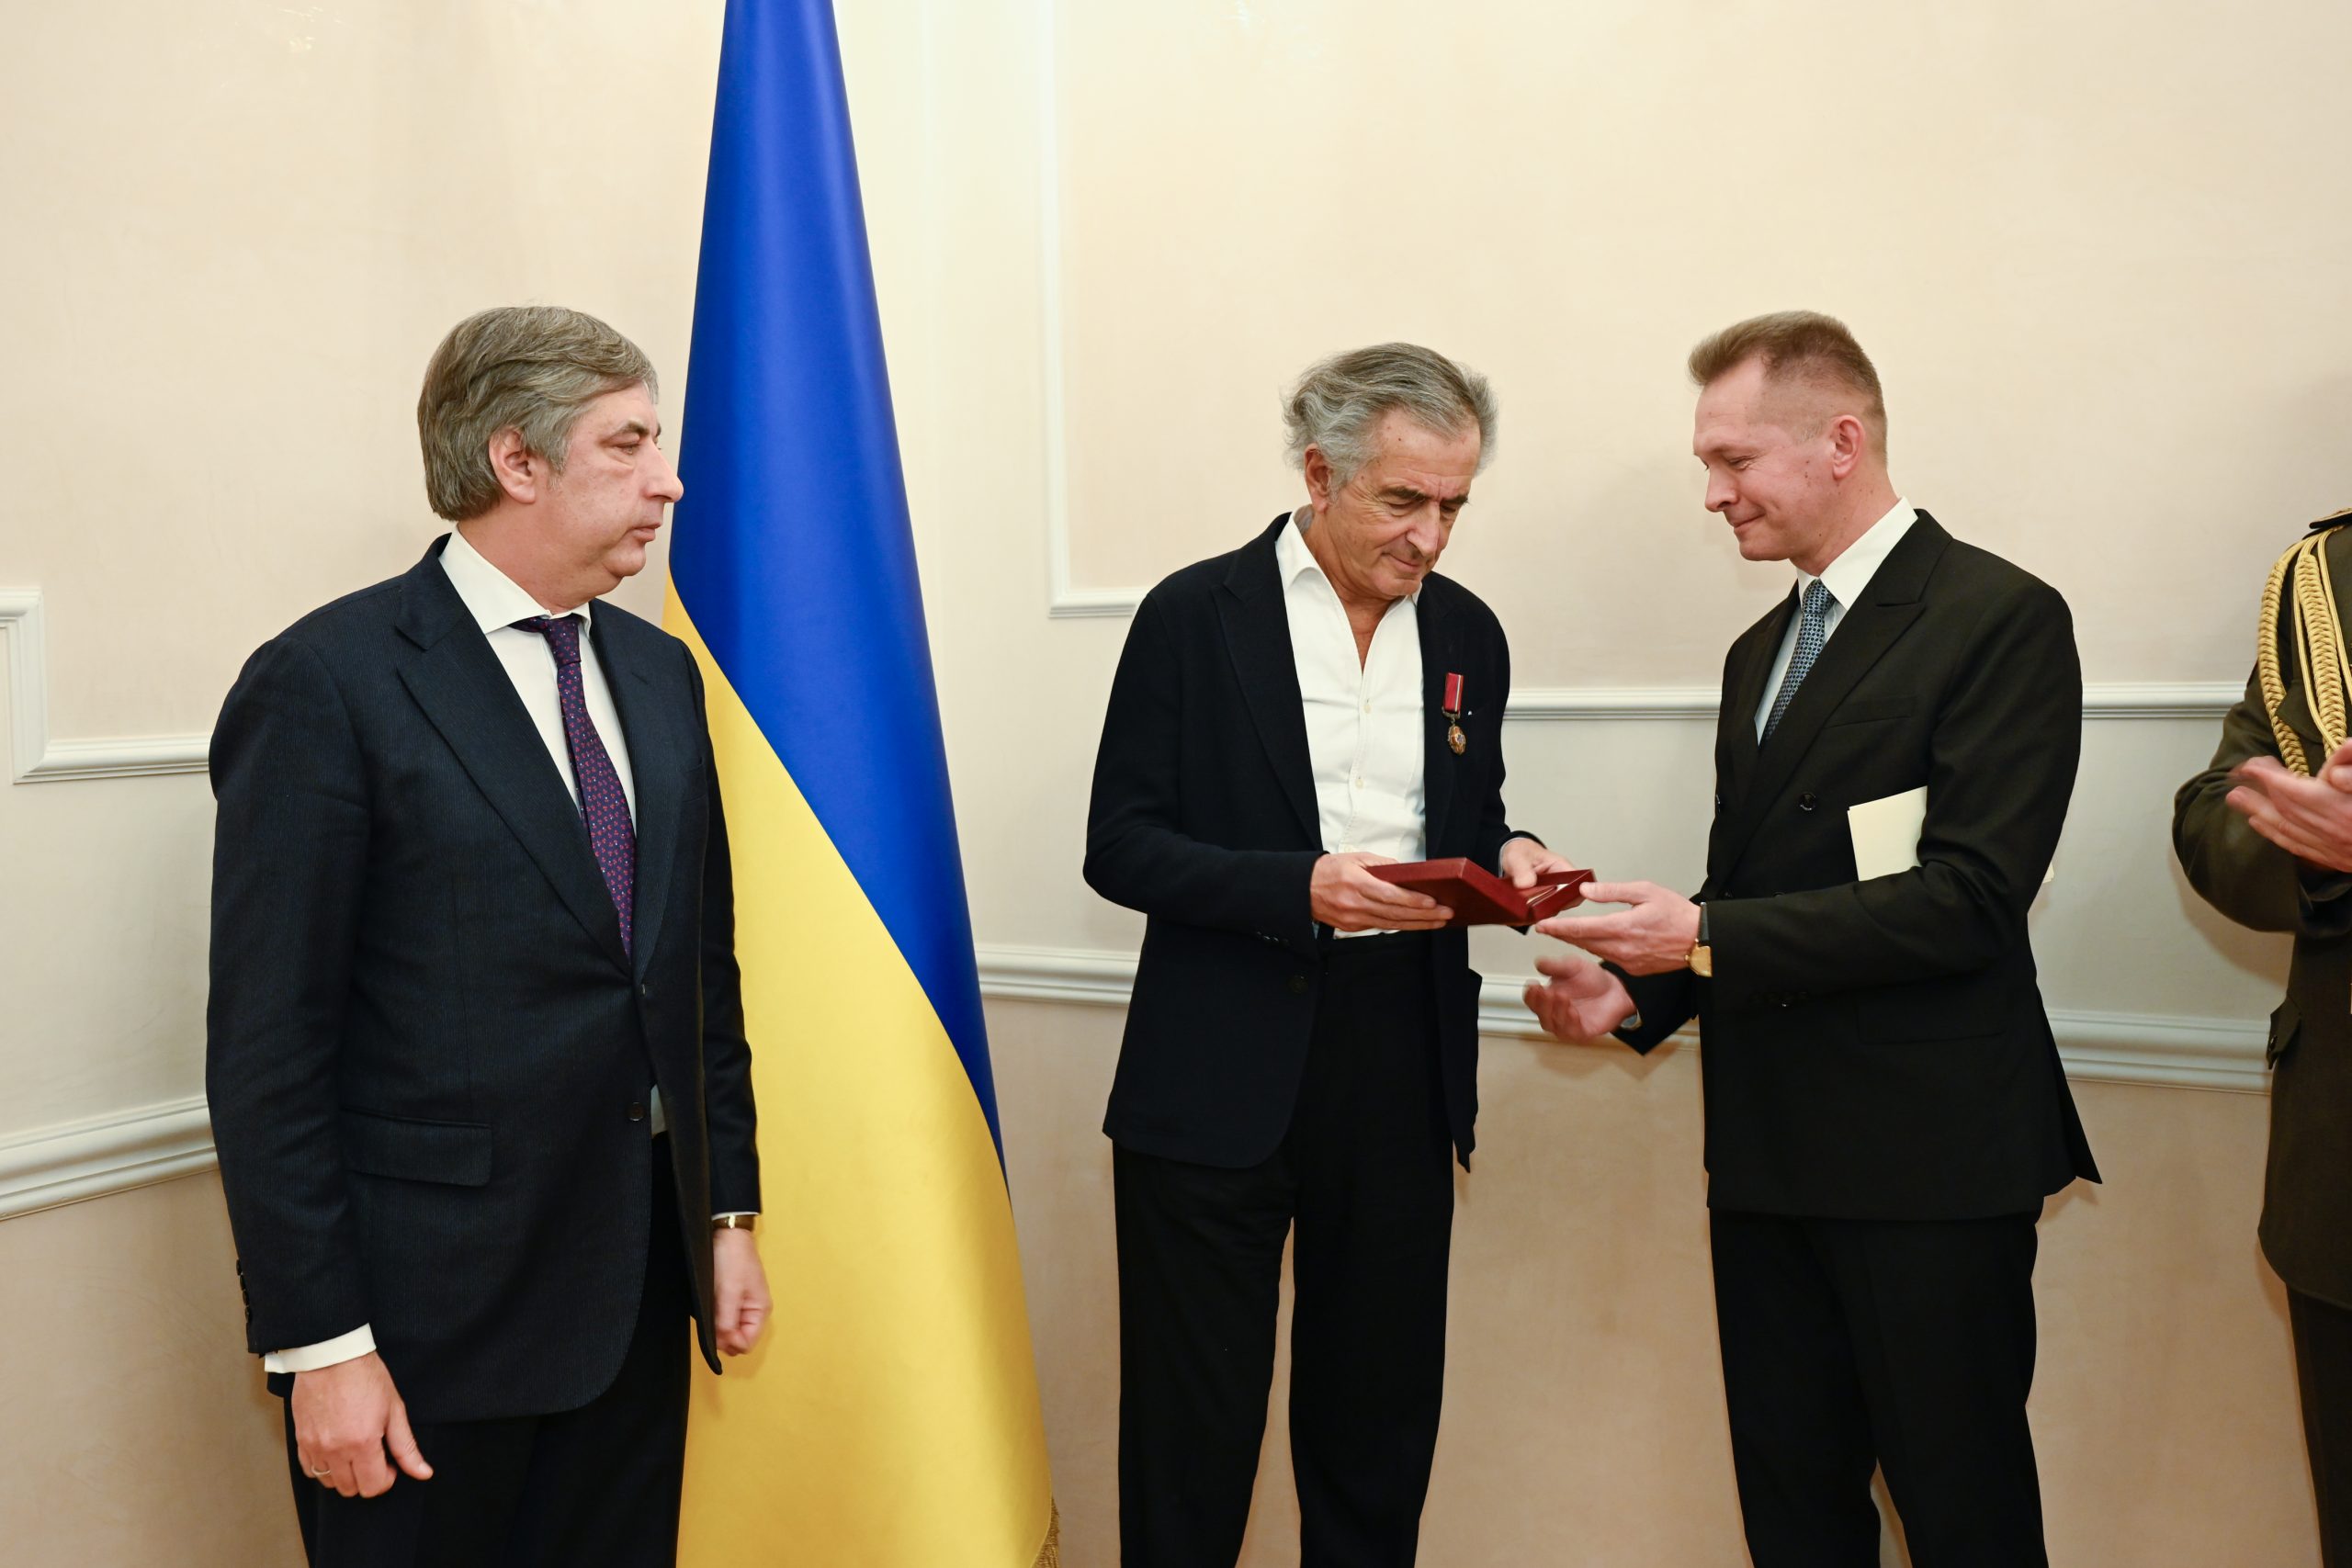 BHL reçoit l'insigne de Chevalier de l'Ordre du Mérite d'Ukraine. Il y a Vadym Omelchenko a côté de lui. Ils sont devant un drapeau ukranien.